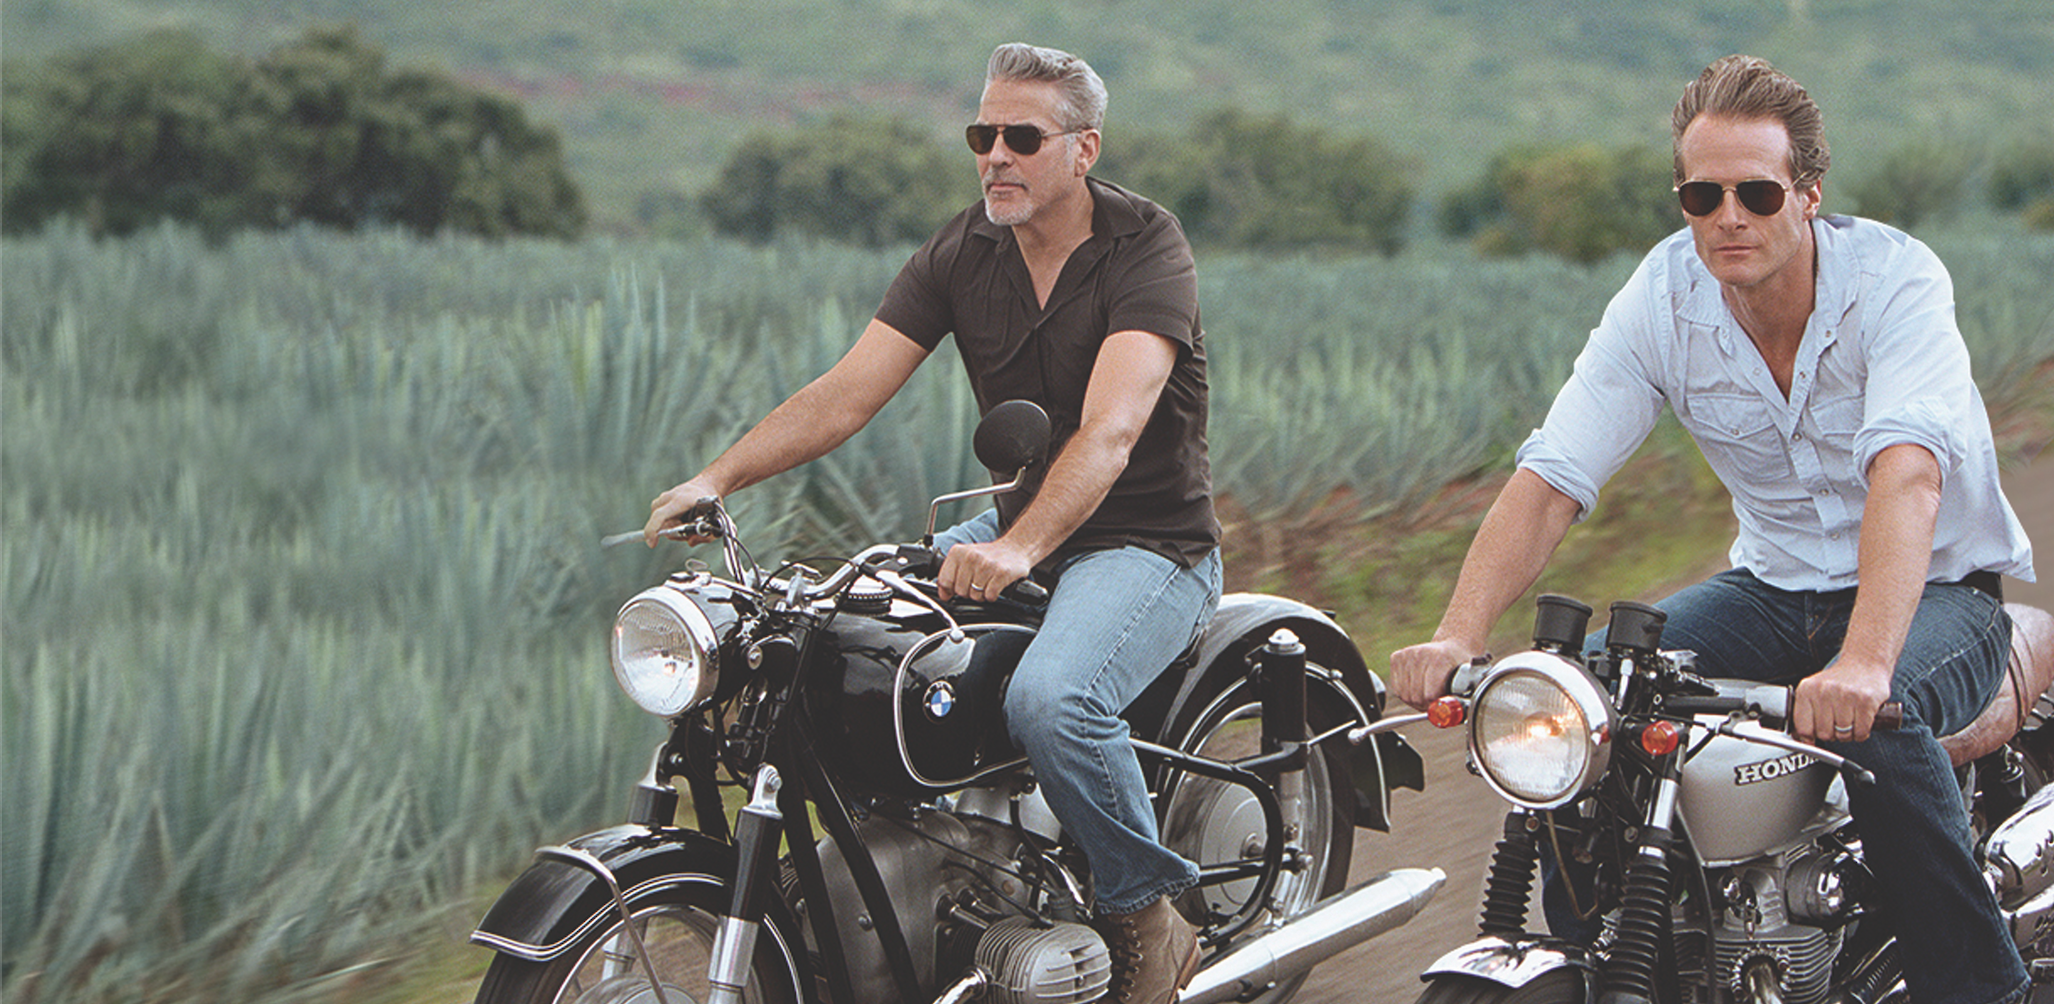 George & Rande On Motorbikes